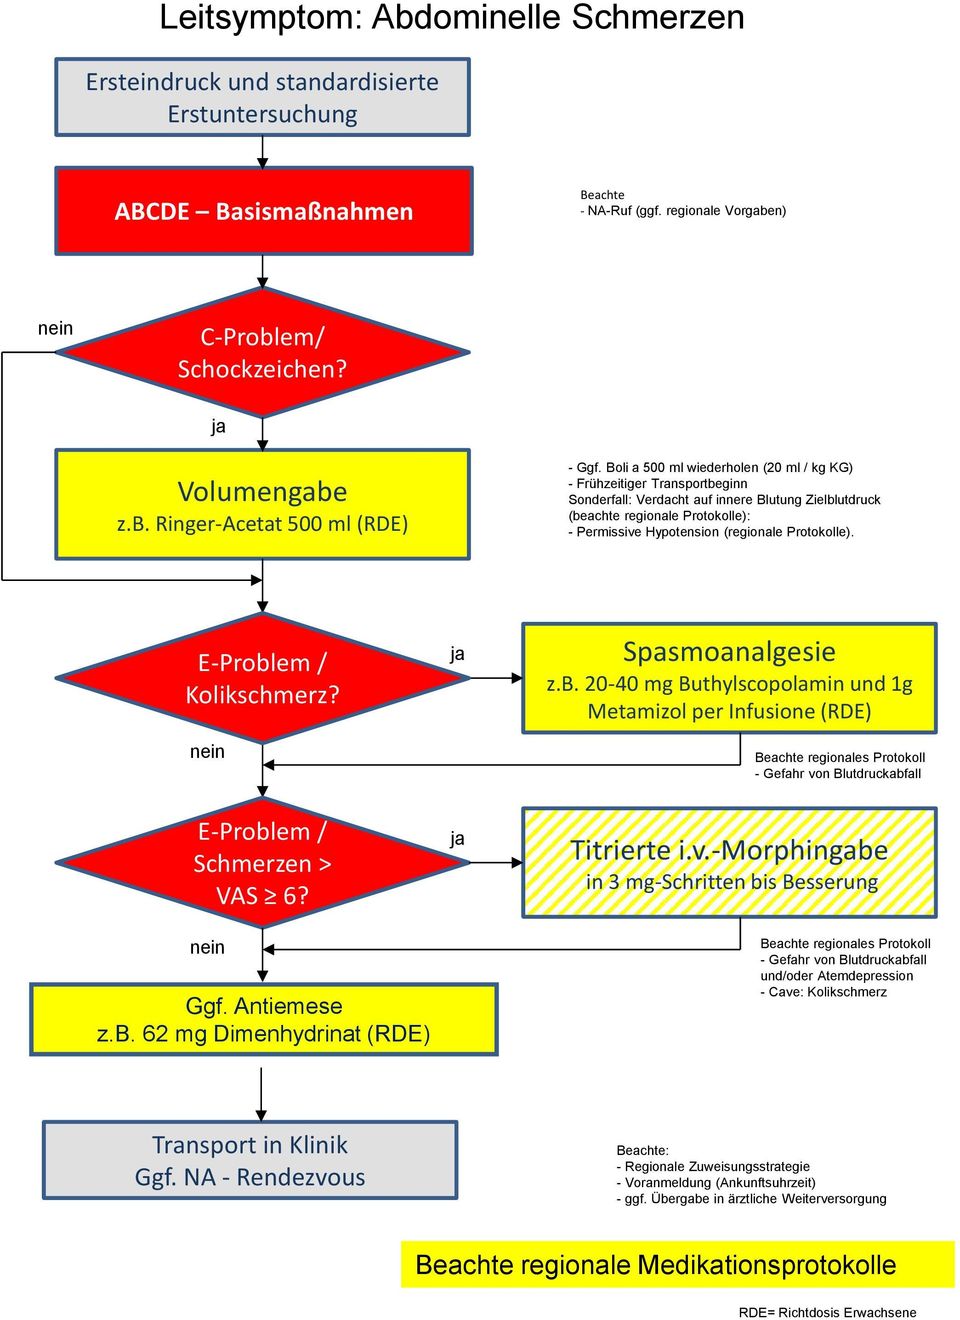 Protokolle). E-Problem / Kolikschmerz? Spasmoanalgesie z.b. 20-40 mg Buthylscopolamin und 1g Metamizol per Infusione (RDE) regionales Protokoll - Gefahr von Blutdruckabfall E-Problem / Schmerzen > VAS 6?